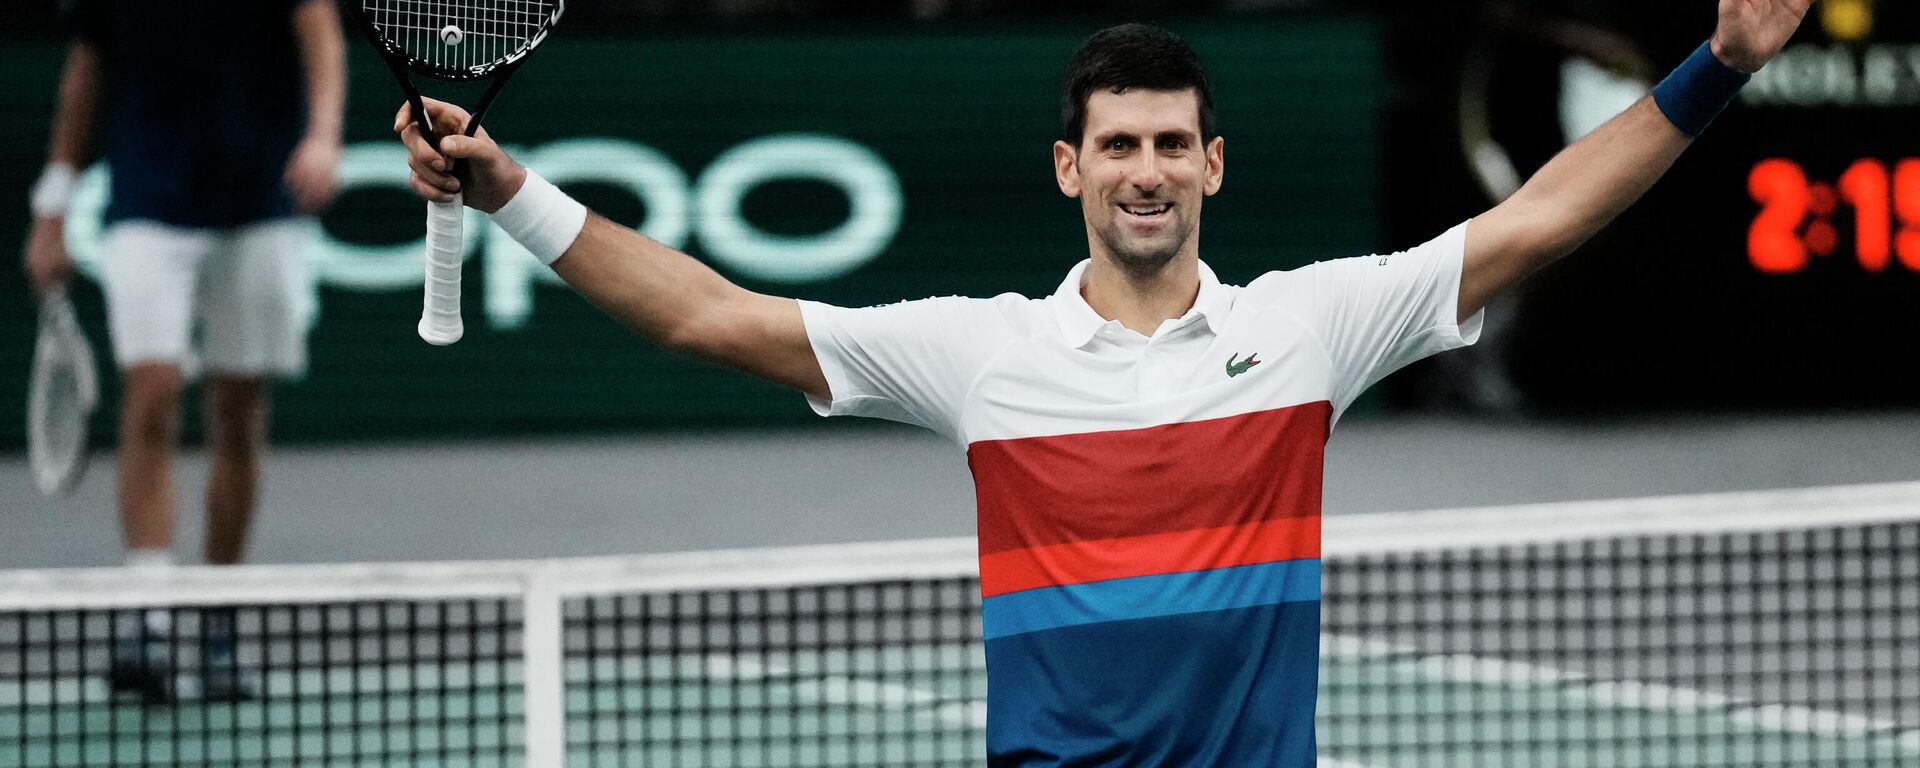 Najbolji teniser sveta Novak Đoković osvojio Masters u Parizu - Sputnik Srbija, 1920, 12.11.2021